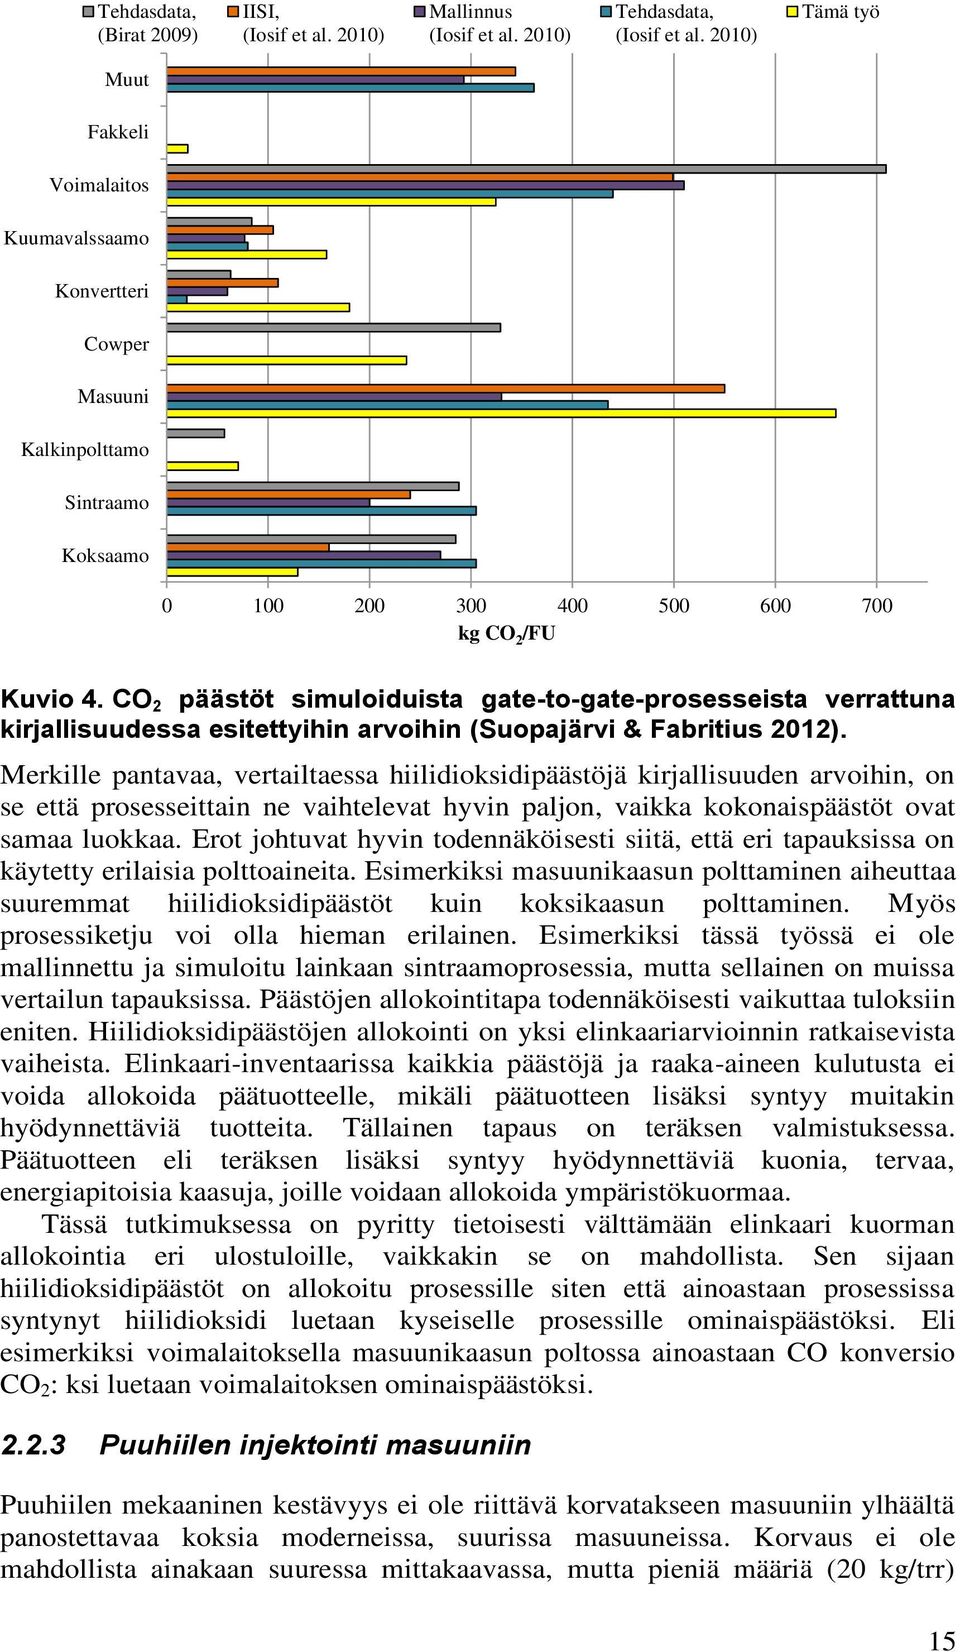 CO 2 päästöt simuloiduista gate-to-gate-prosesseista verrattuna kirjallisuudessa esitettyihin arvoihin (Suopajärvi & Fabritius 2012).